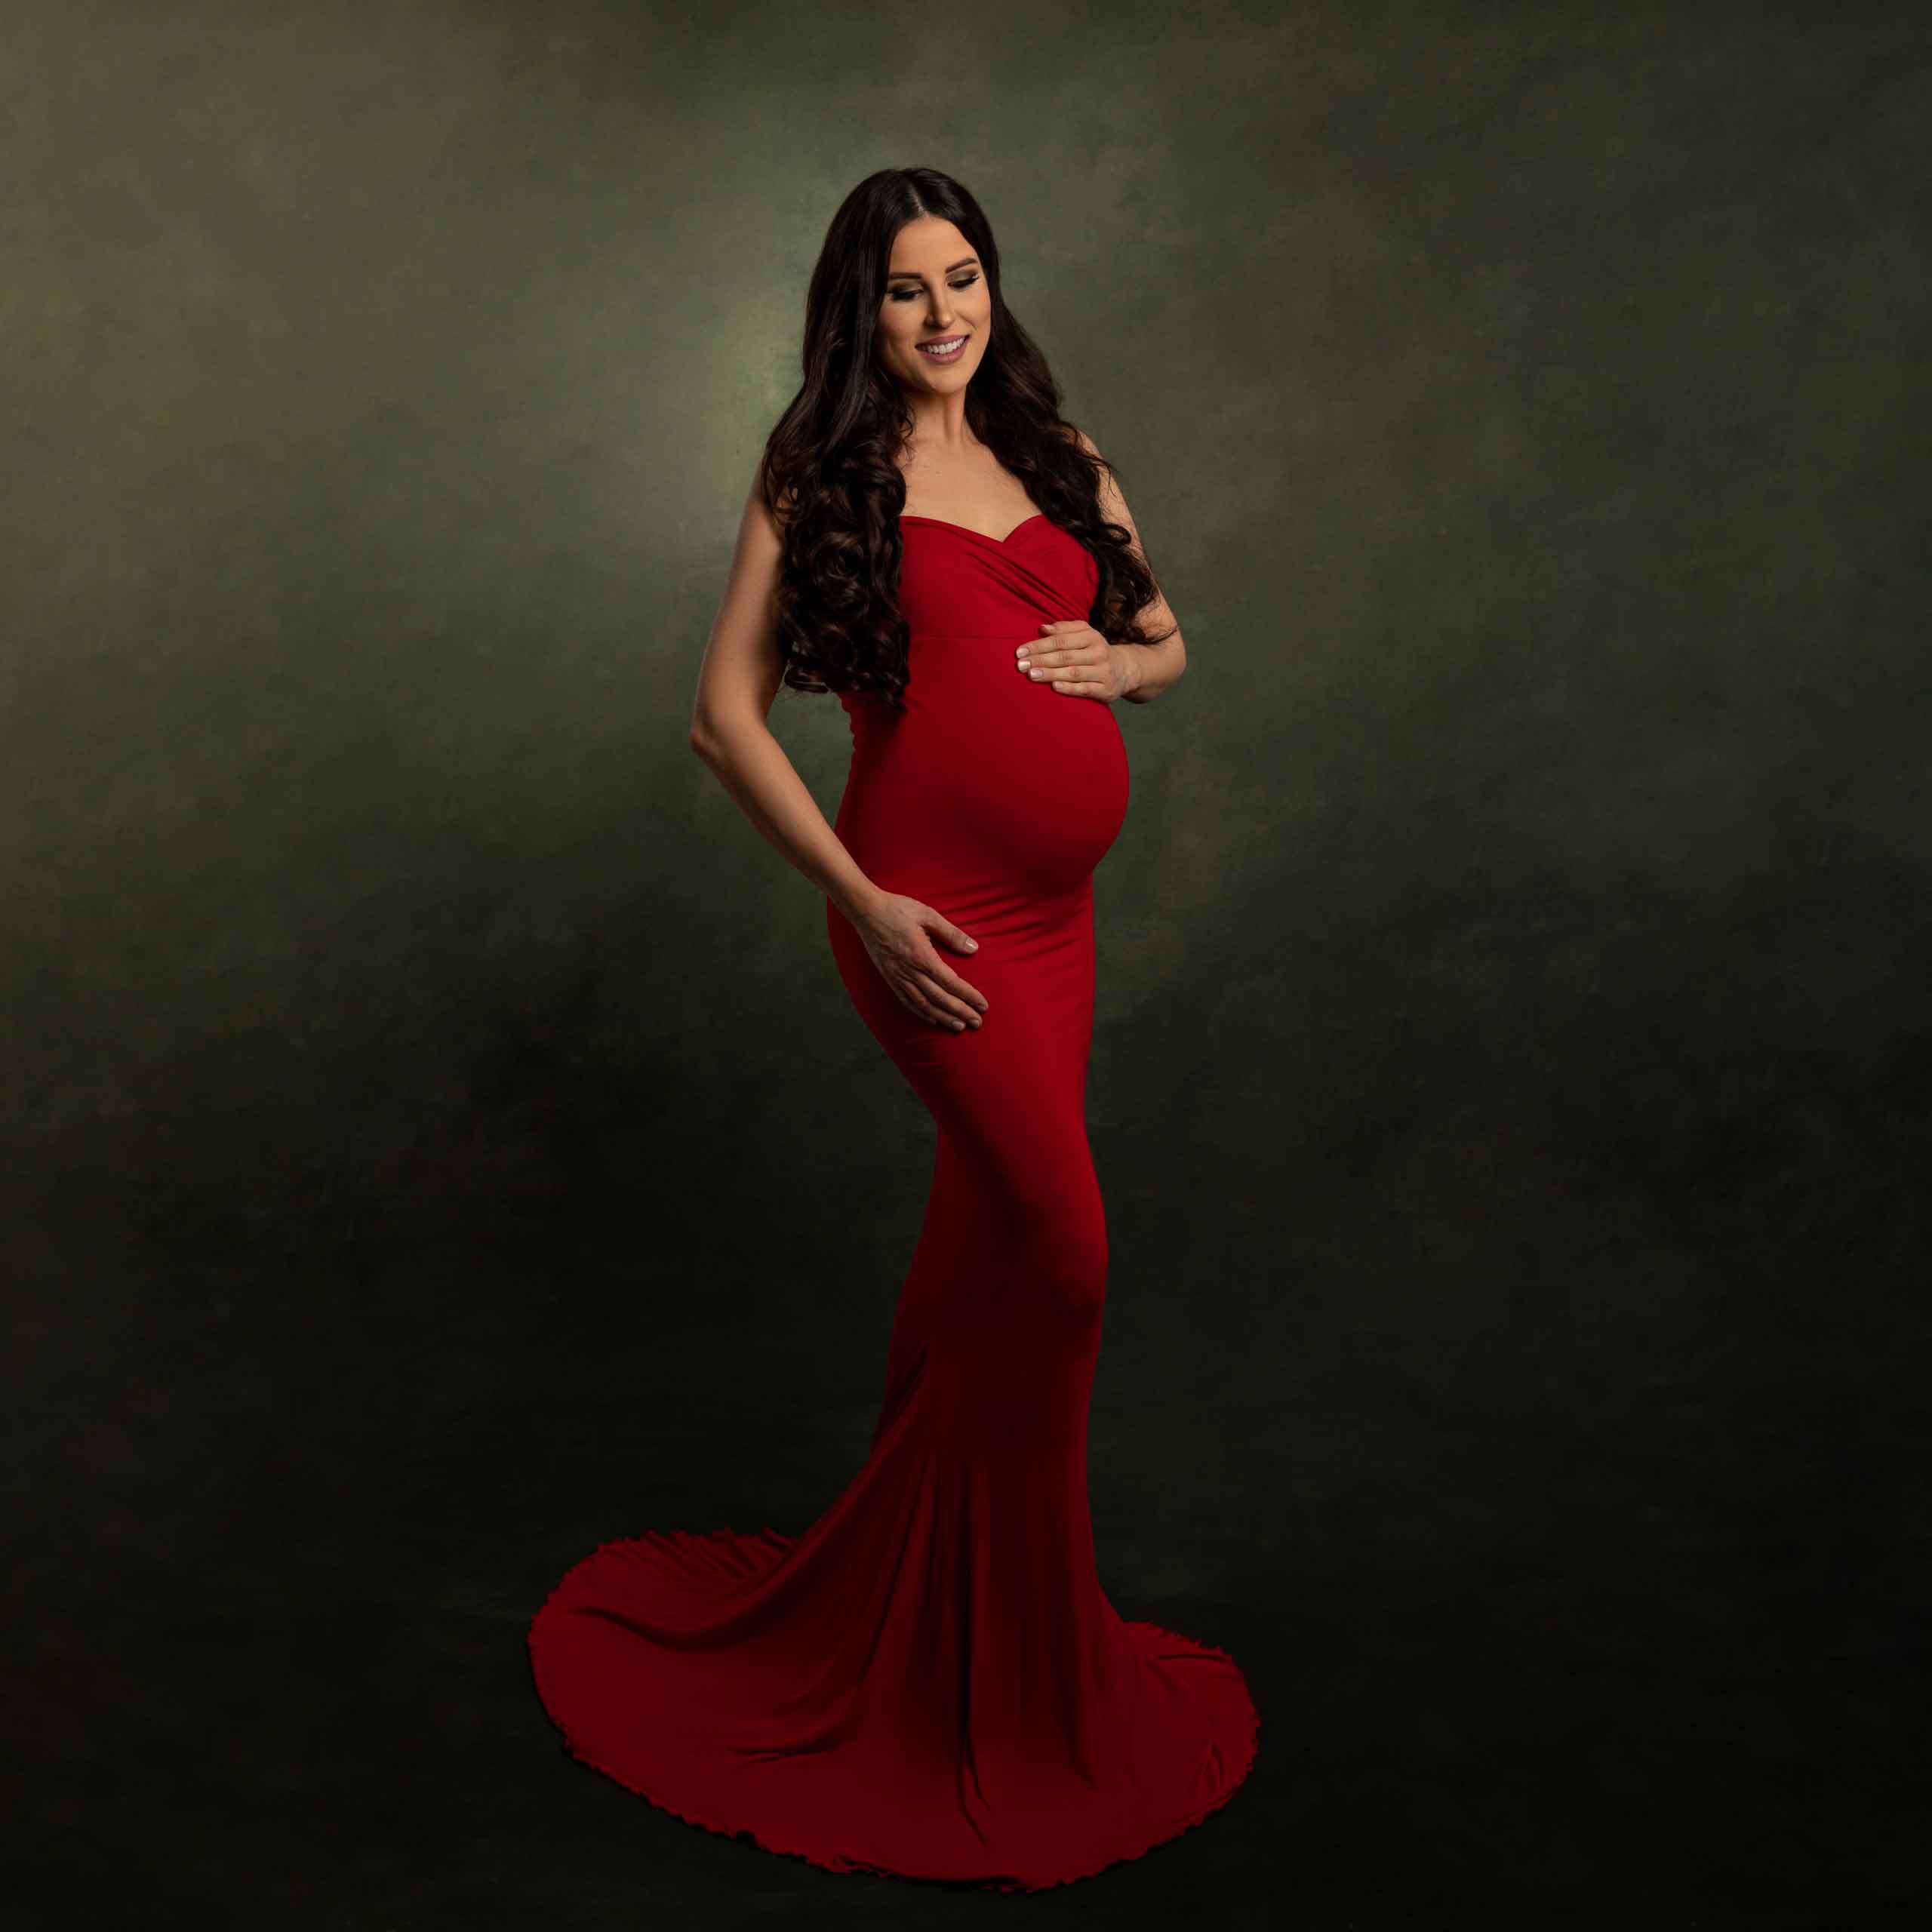 schwangere frau im roten kleid